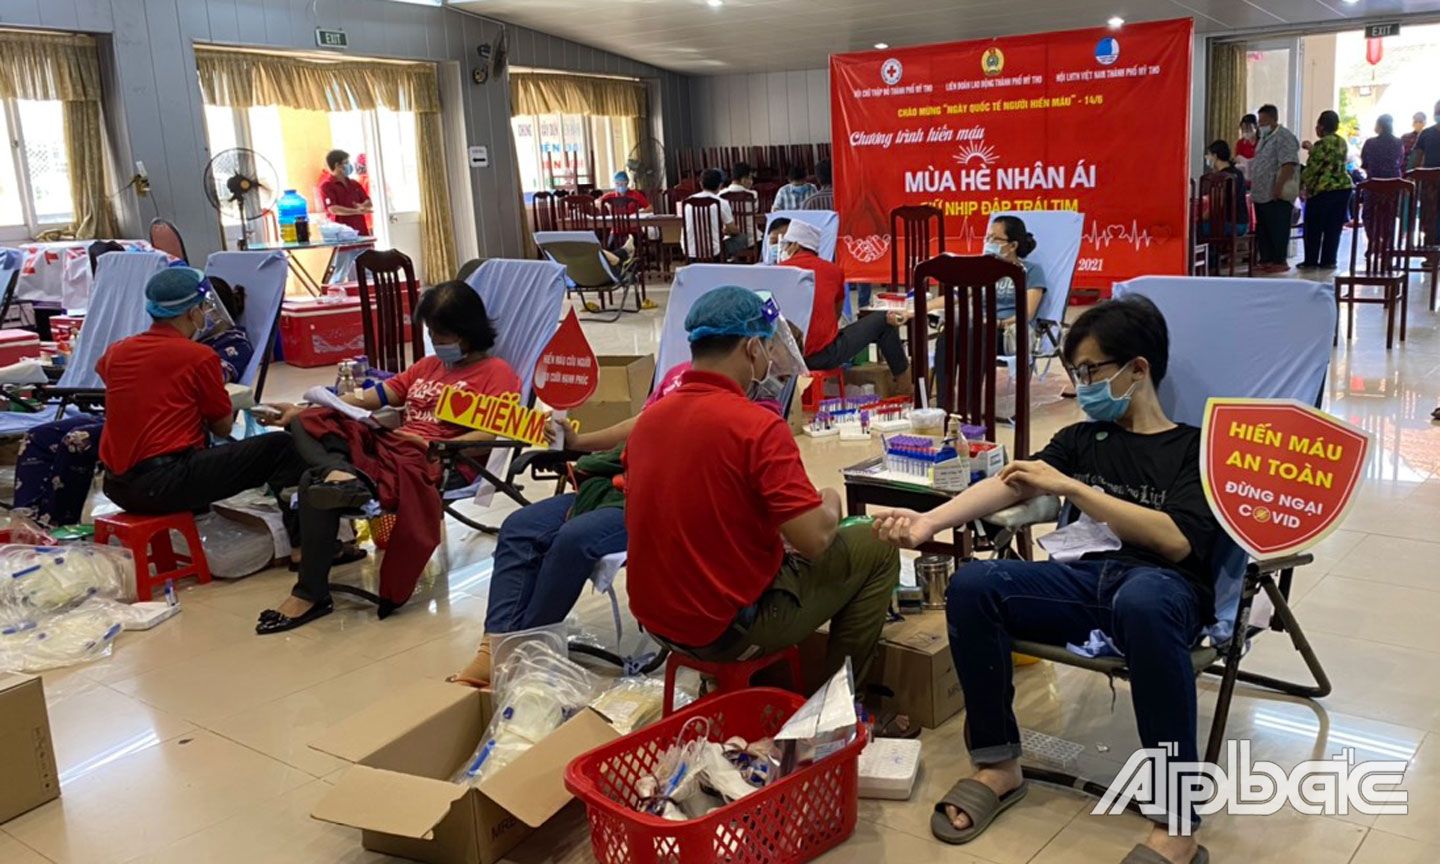 Hội CTĐ tỉnh Tiền Giang vẫn duy trì hoạt động hiến máu khẩn cấp, nhằm đảm bảo an toàn hiến máu trong mùa dịch theo thông điệp “Hiến máu an toàn, không ngại Covid-19”.